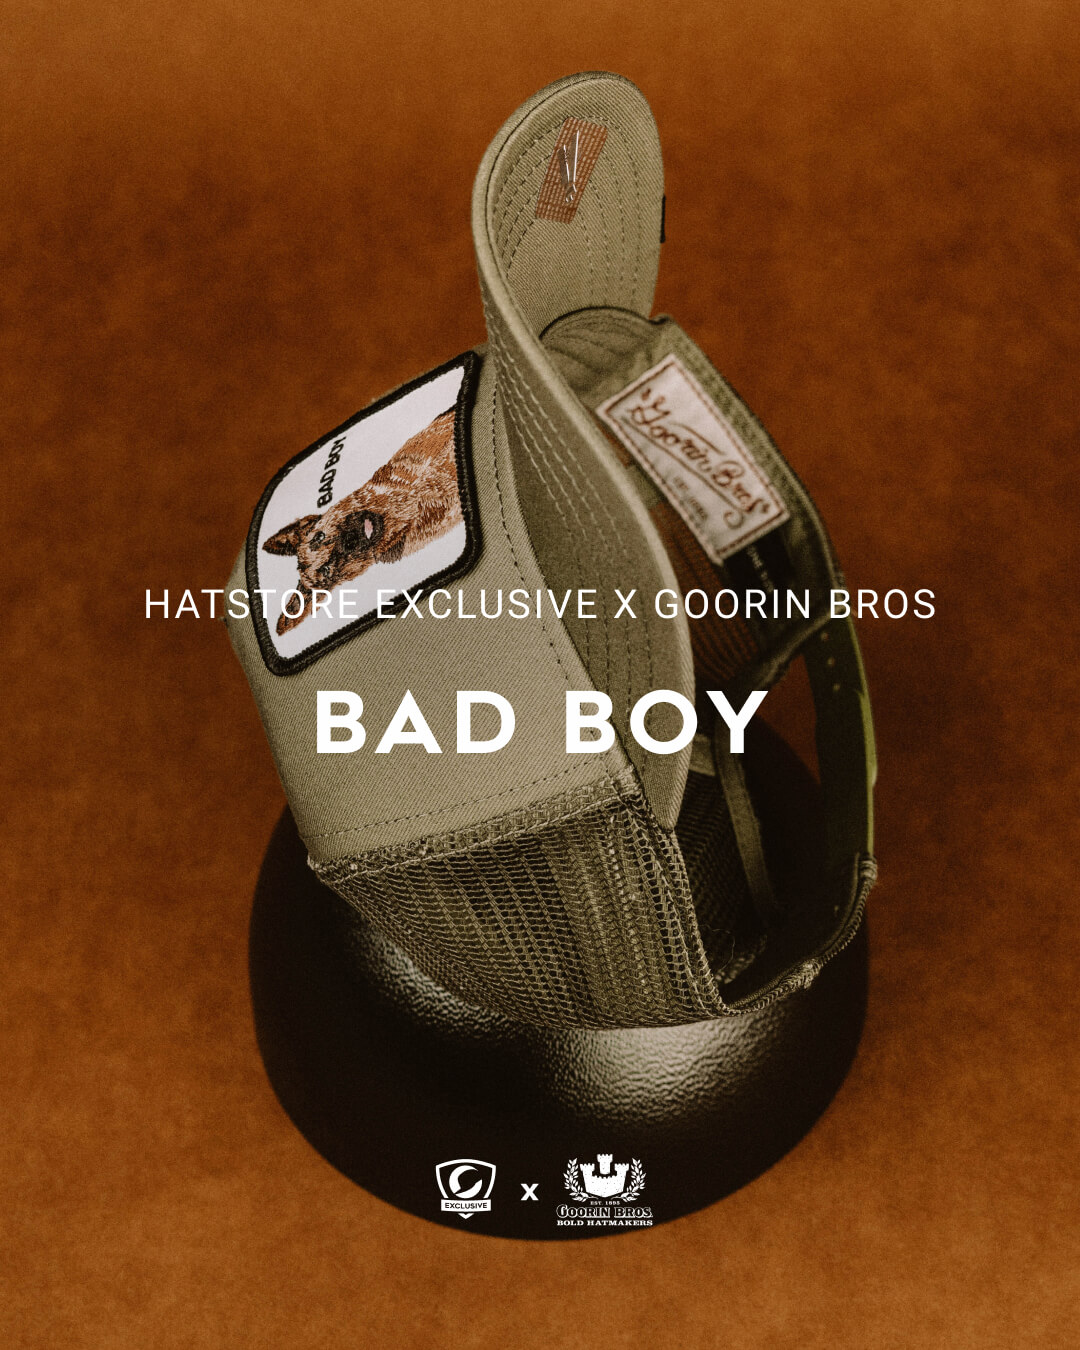 Hatstore Exclusive x Bad Boy Olive Trucker - Goorin Bros. Caps 